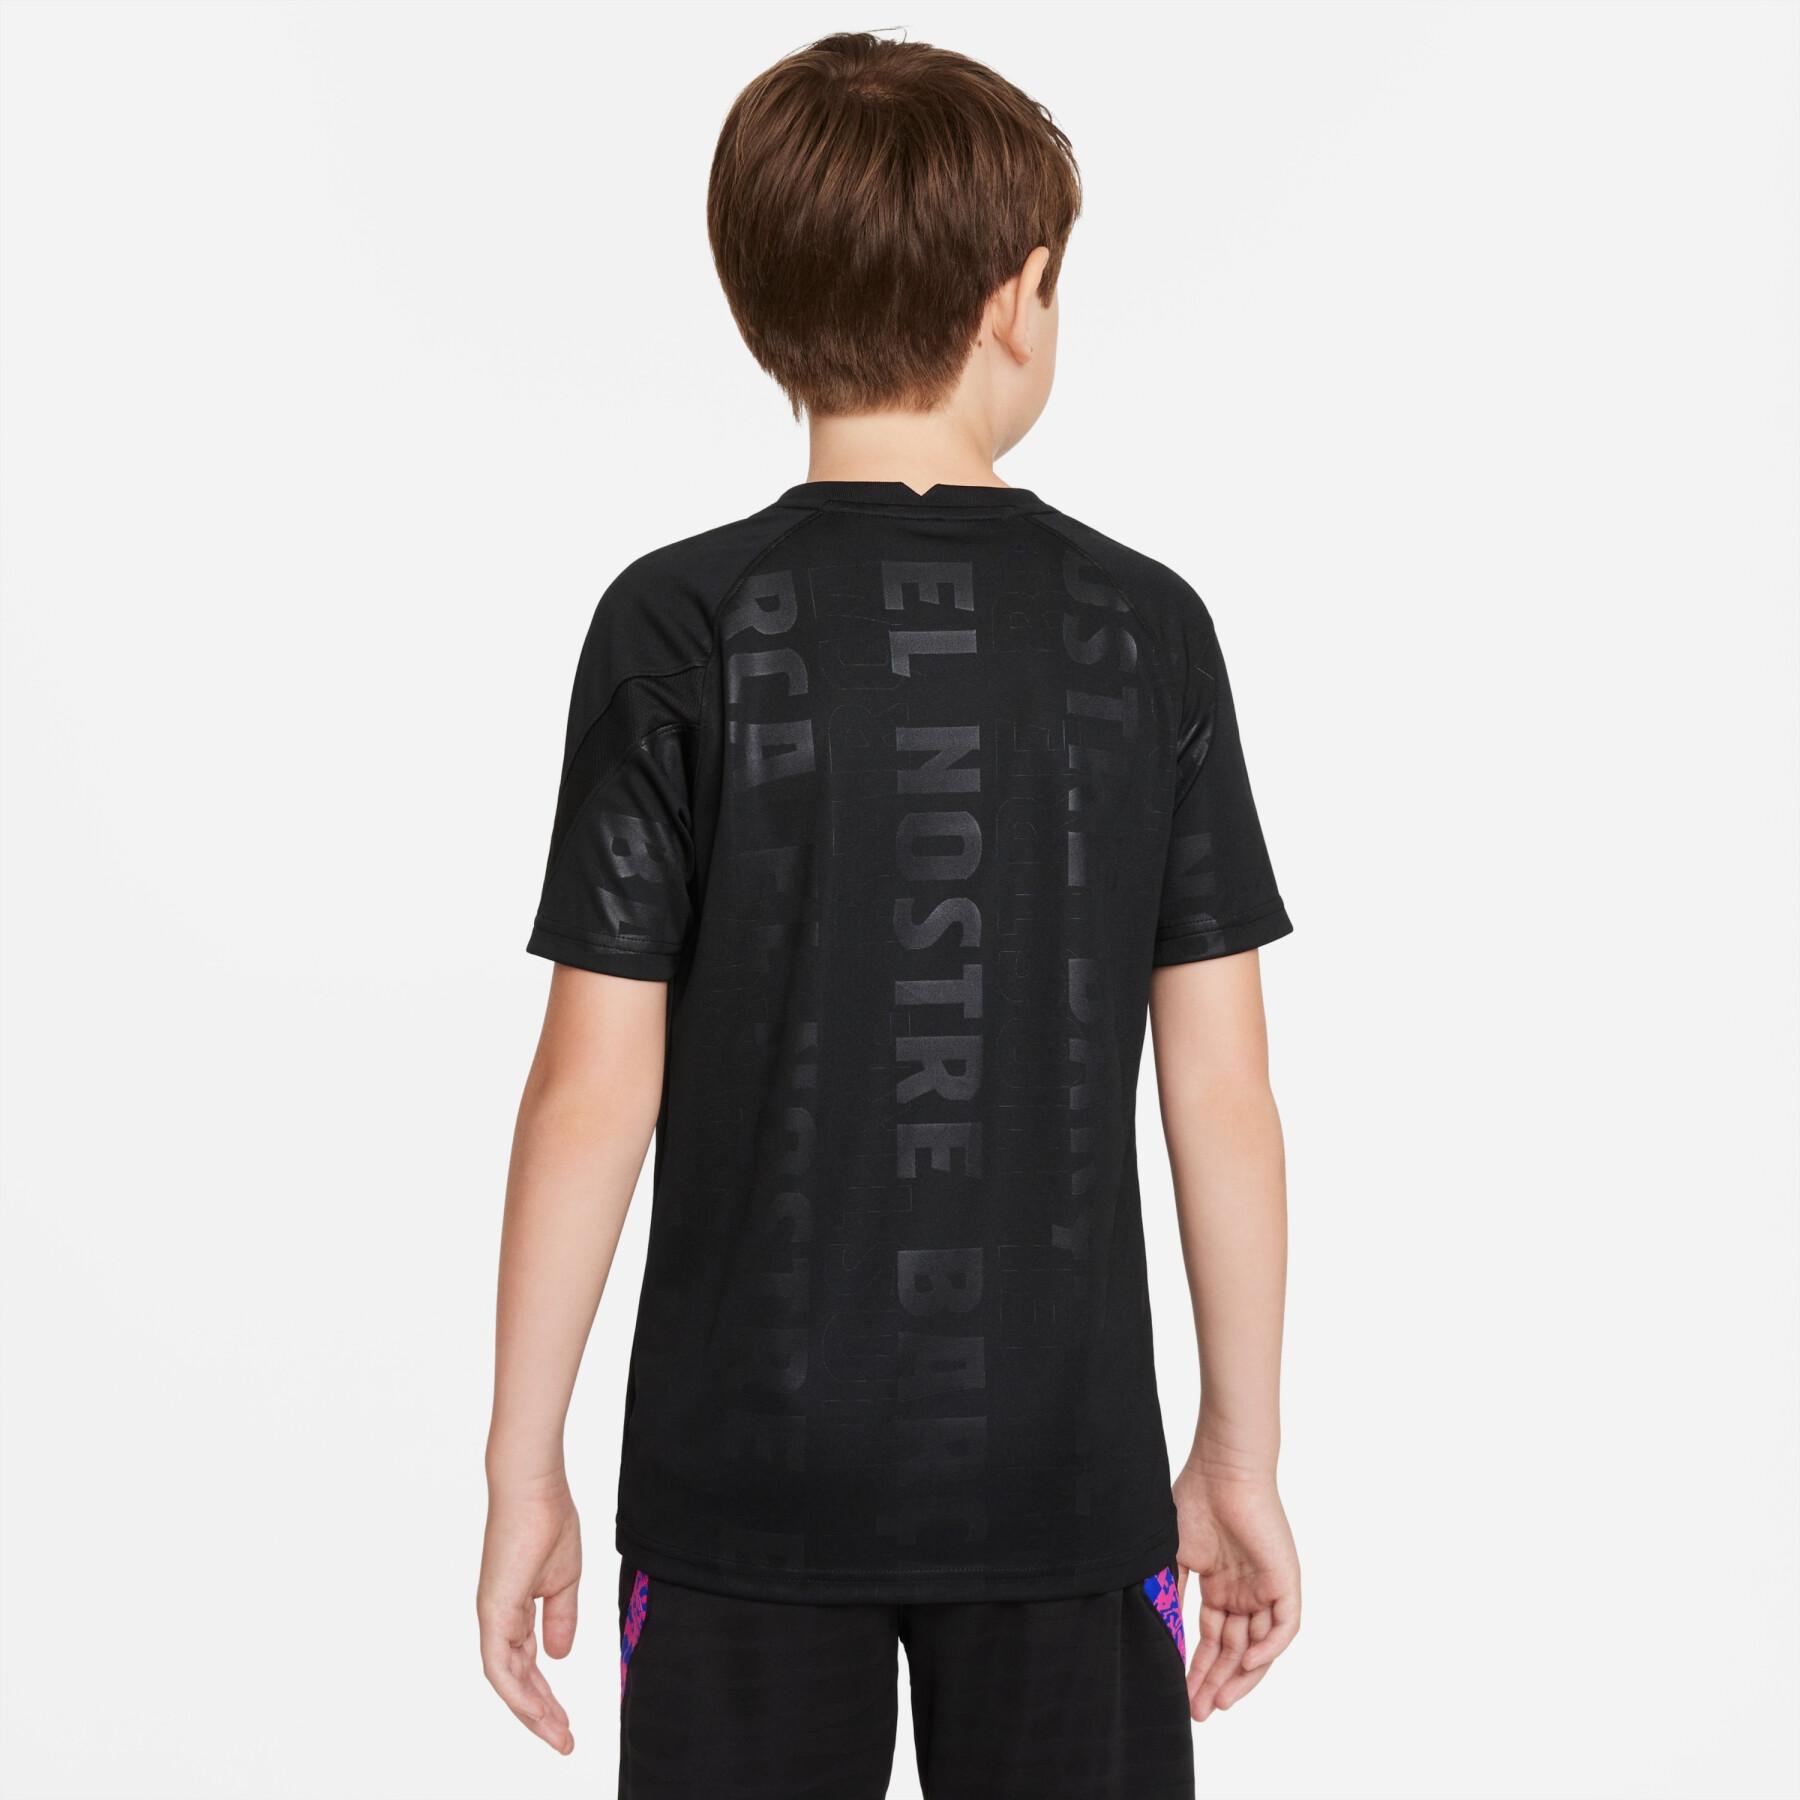 Koszulka dla dzieci FC Barcelone dynamic fit pm cl